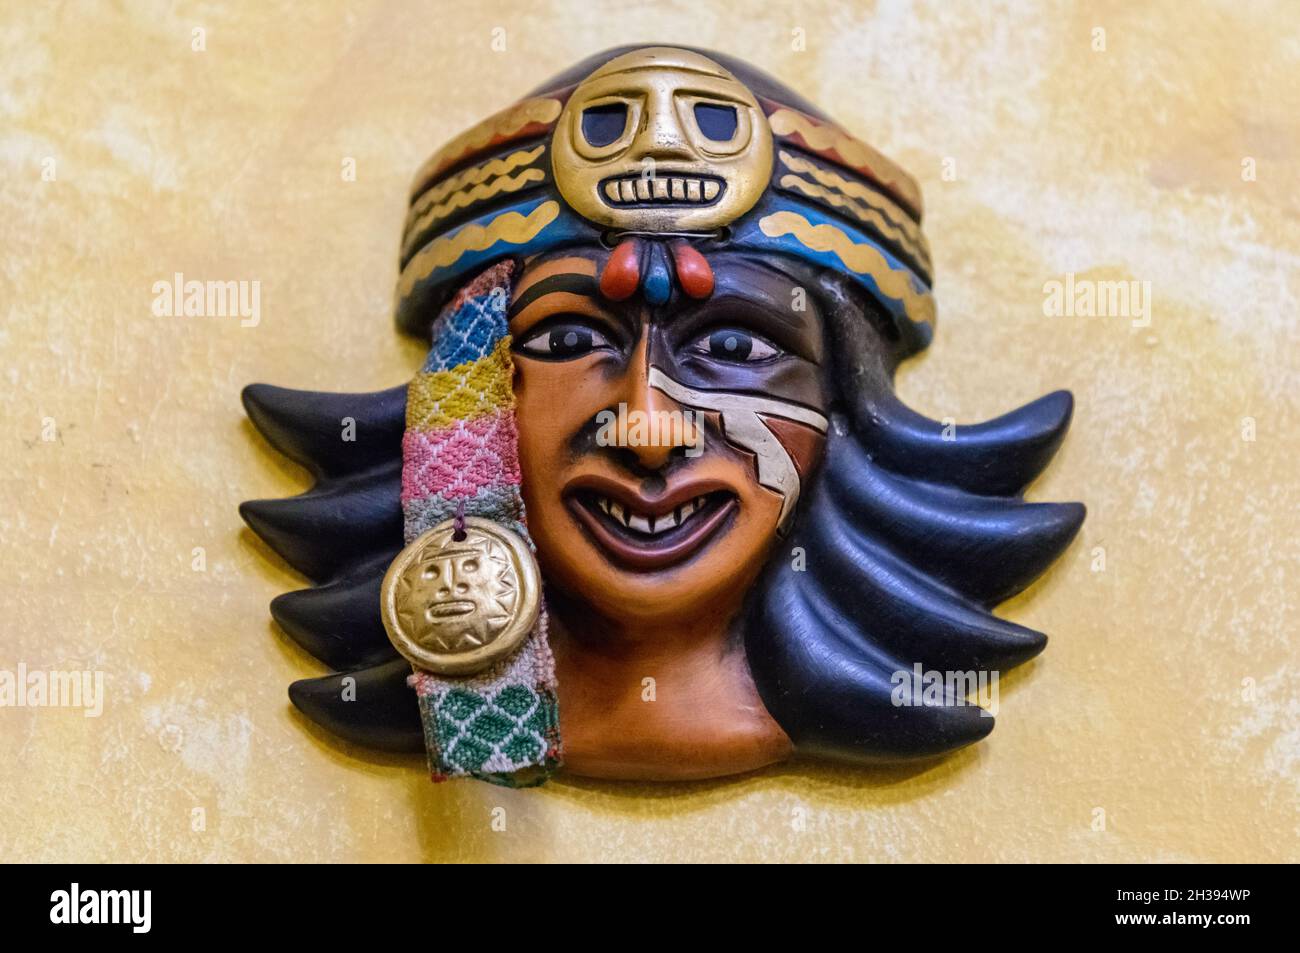 Maschera artistica del viso di una donna Inca decorare il muro. Cuzco, Perù. Foto Stock